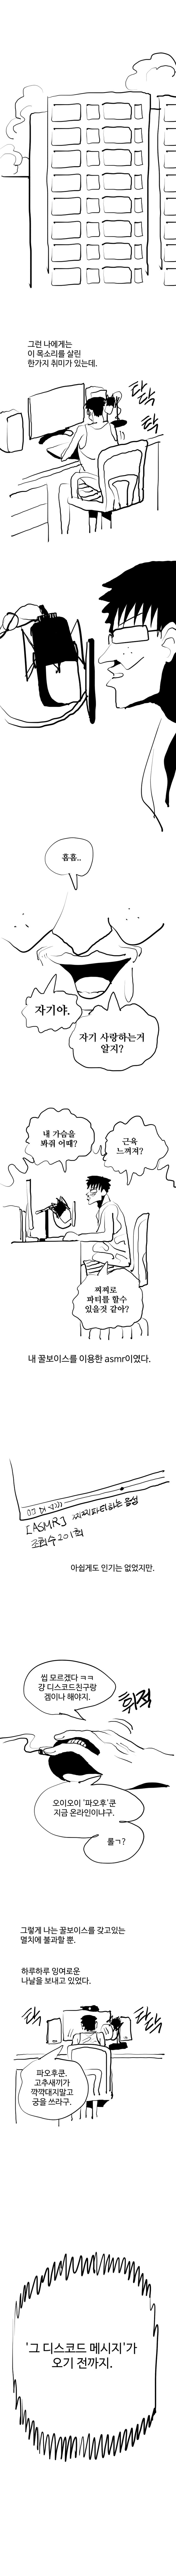 찐따가 버튜버 하는 만화 (상).manwhA